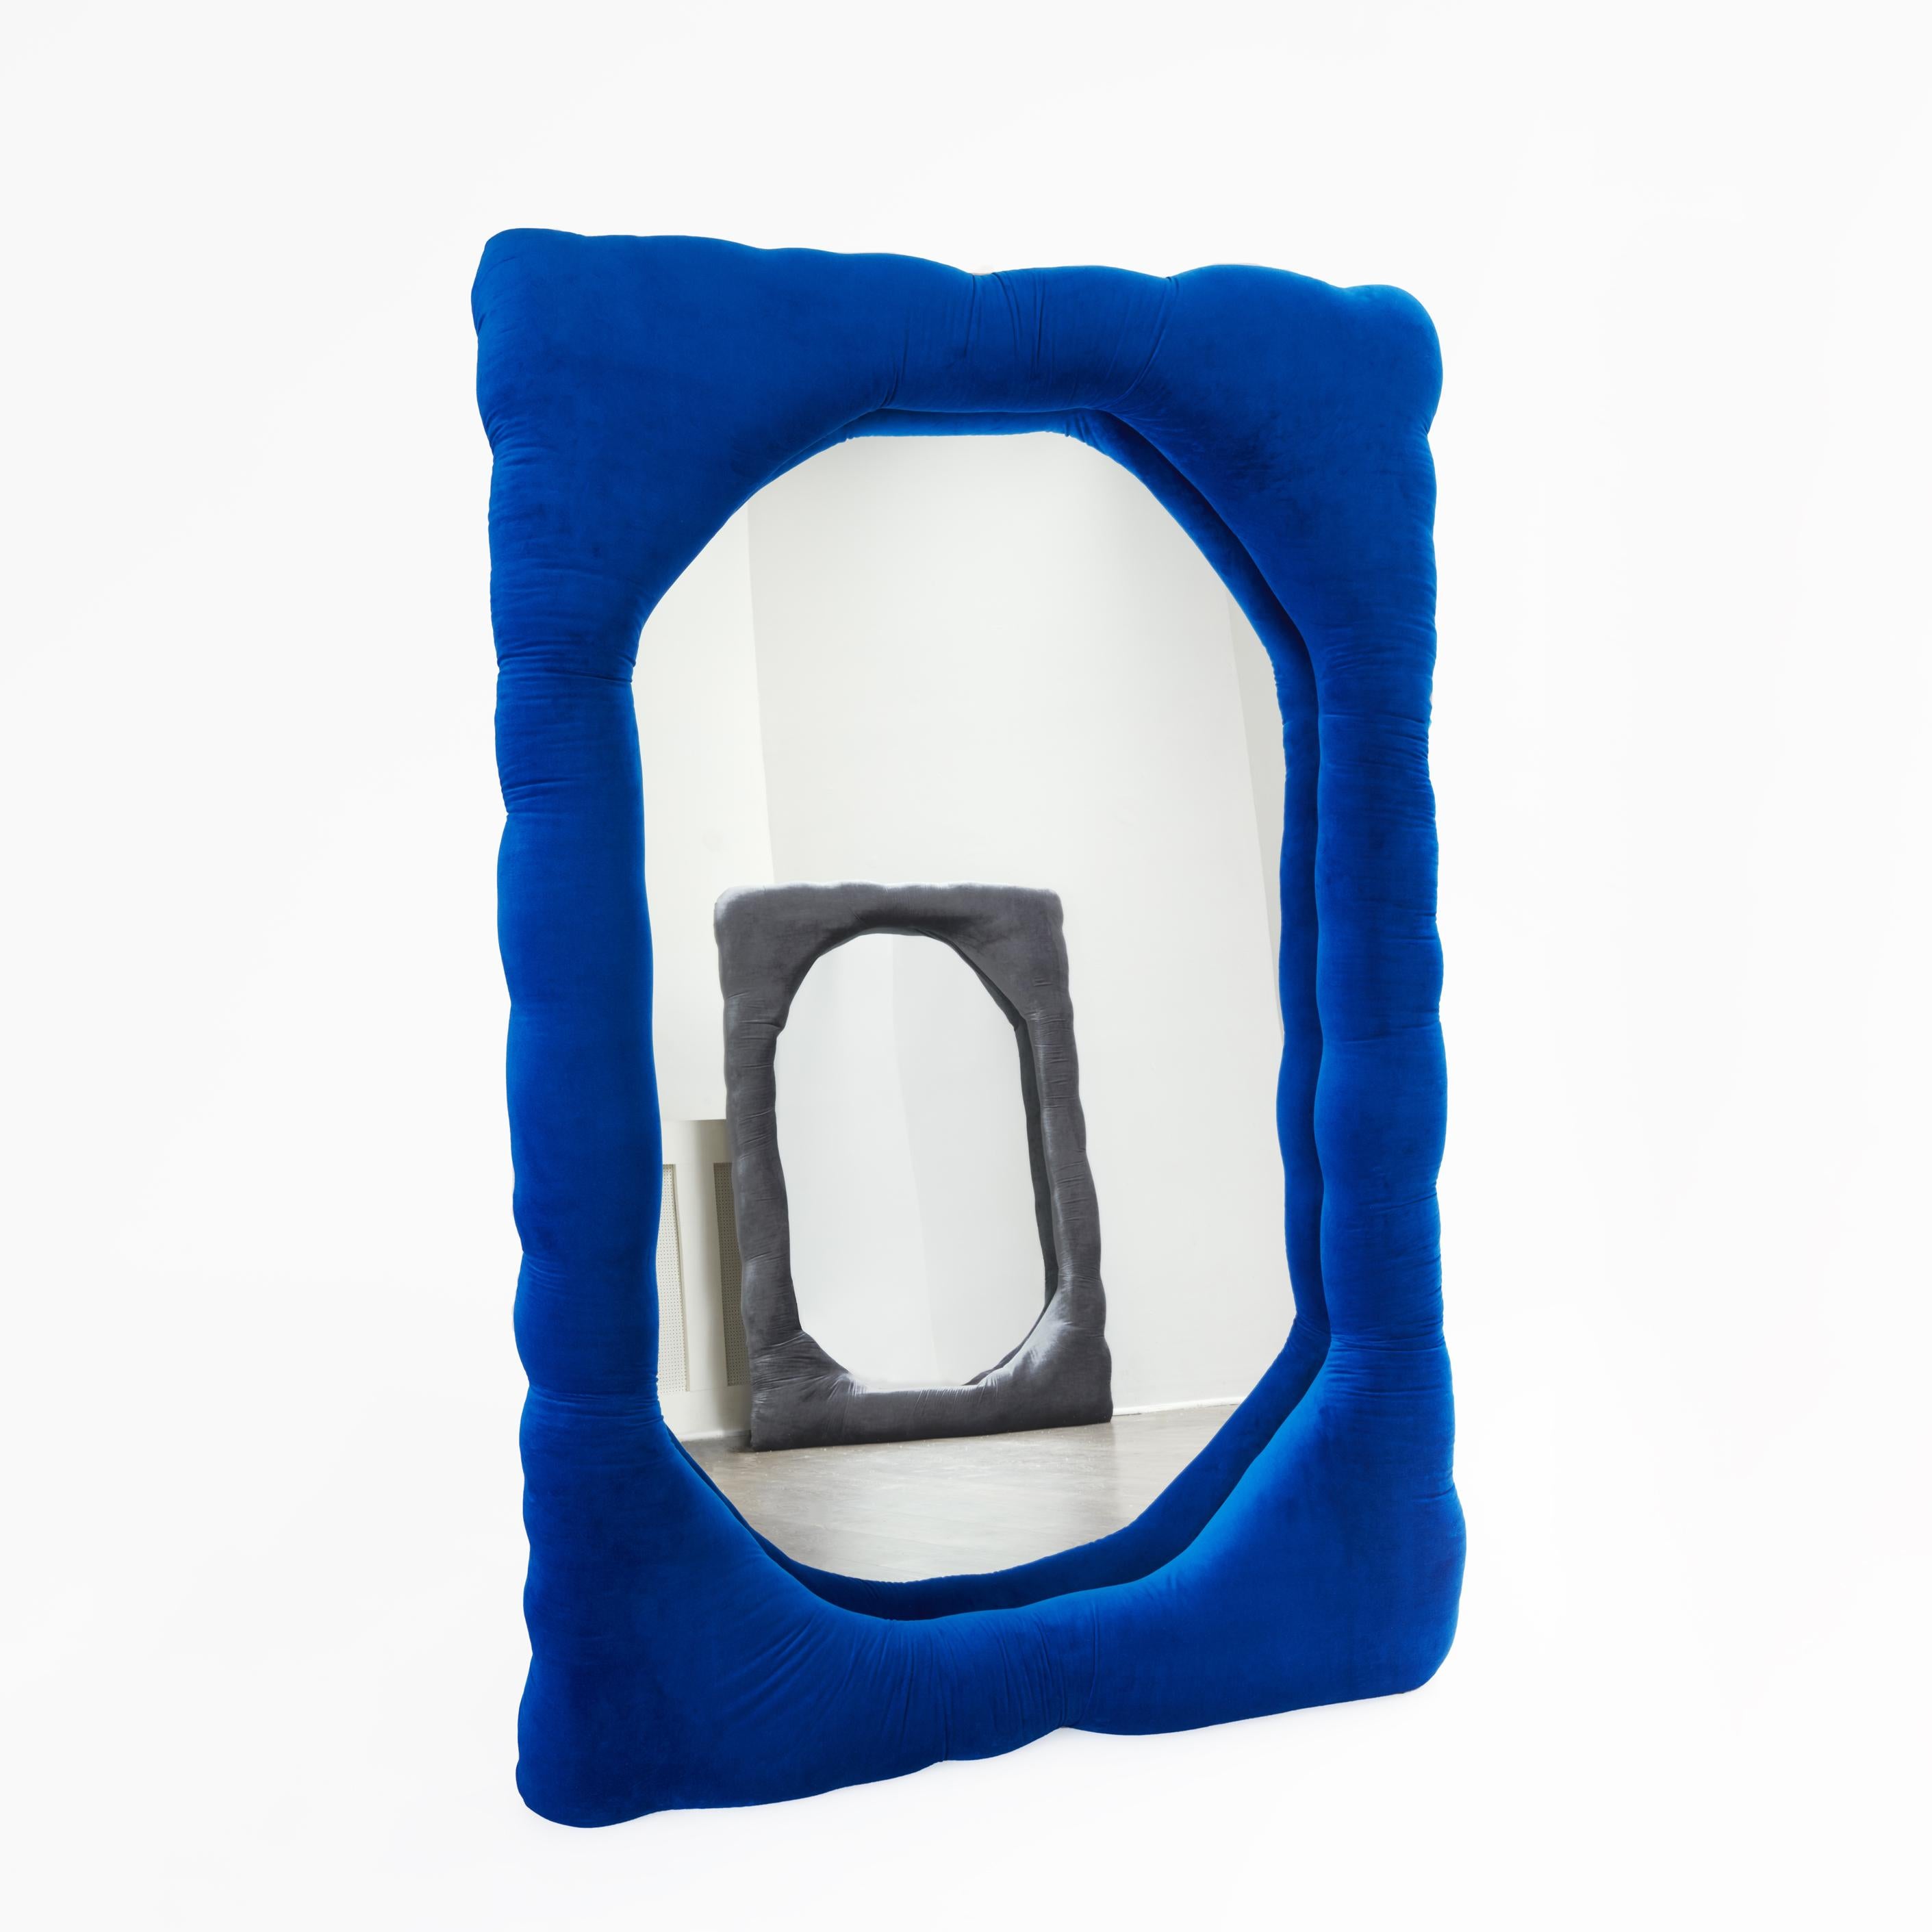 Biomorpher Spiegel von Brandi Howe

Samtstoff, Spiegel, Holz

Abgebildet: 68 x 45 x 5 Zoll.

Dieser Spiegel ist in verschiedenen Farben, Stoffen und Größen anpassbar.

Andere Größe verfügbar: 60 x 15 x 5 Zoll.

Der Artikel ist zur sofortigen